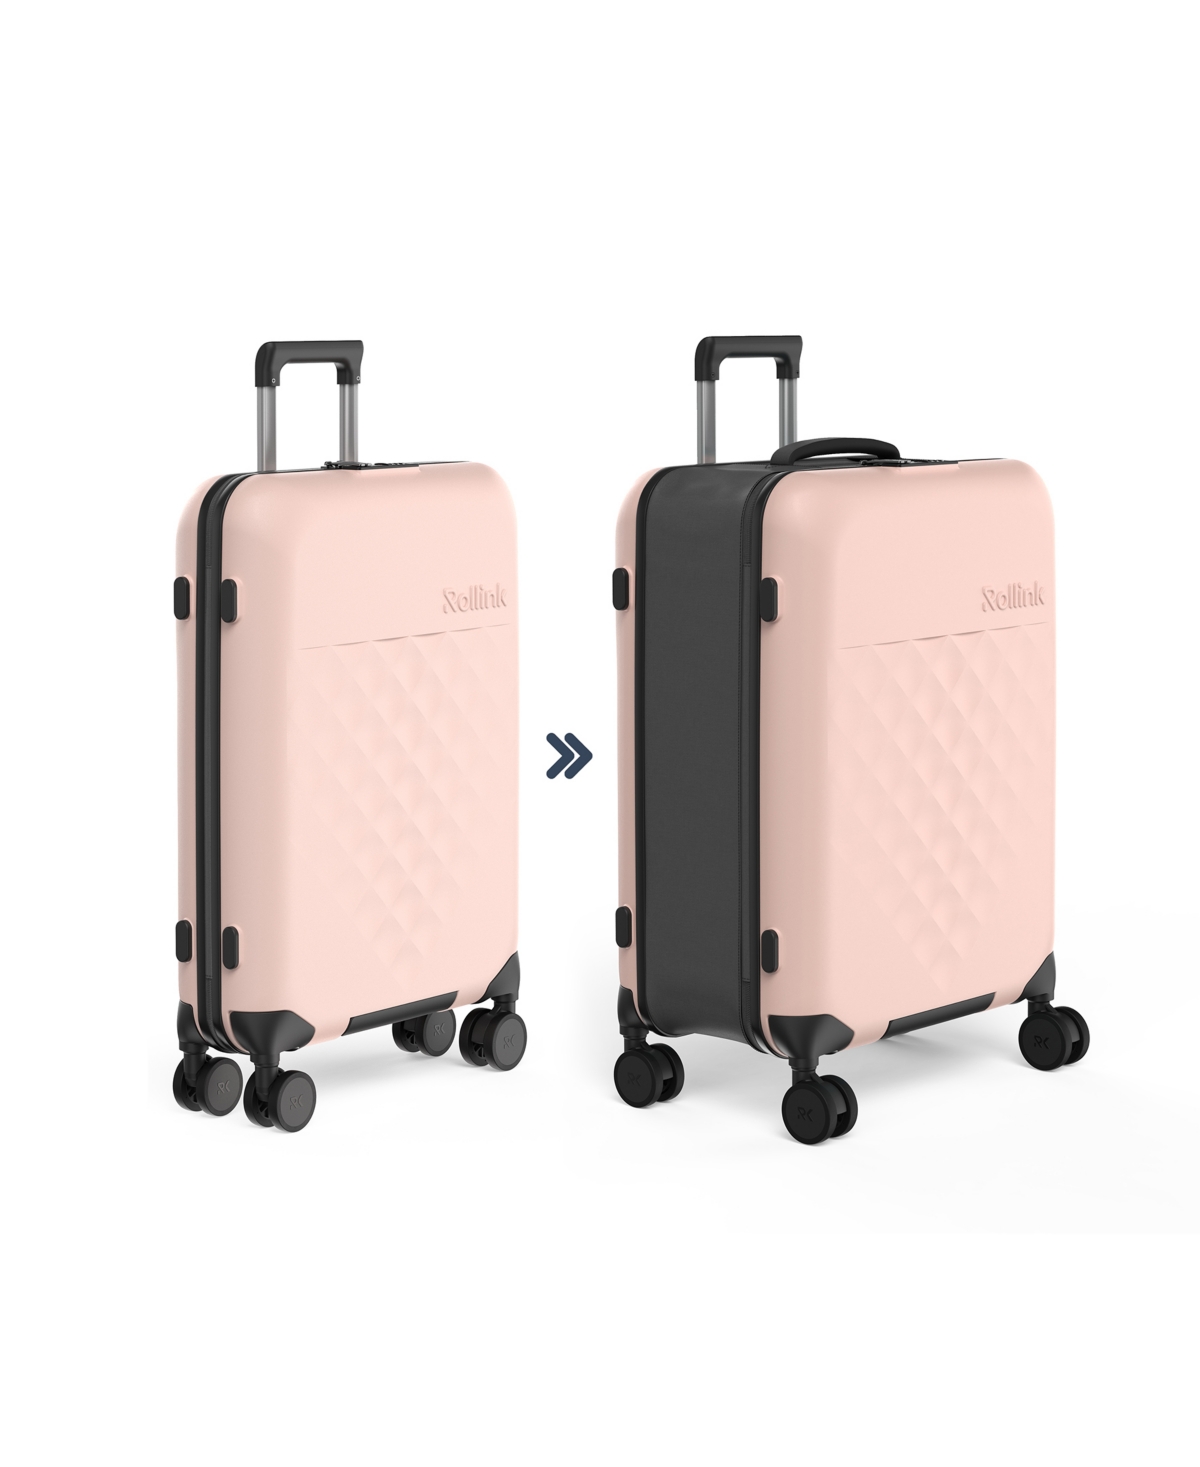 Rollink Flex 360 Spinner 26" Medium Check-in Suitcase In Pastel Pink